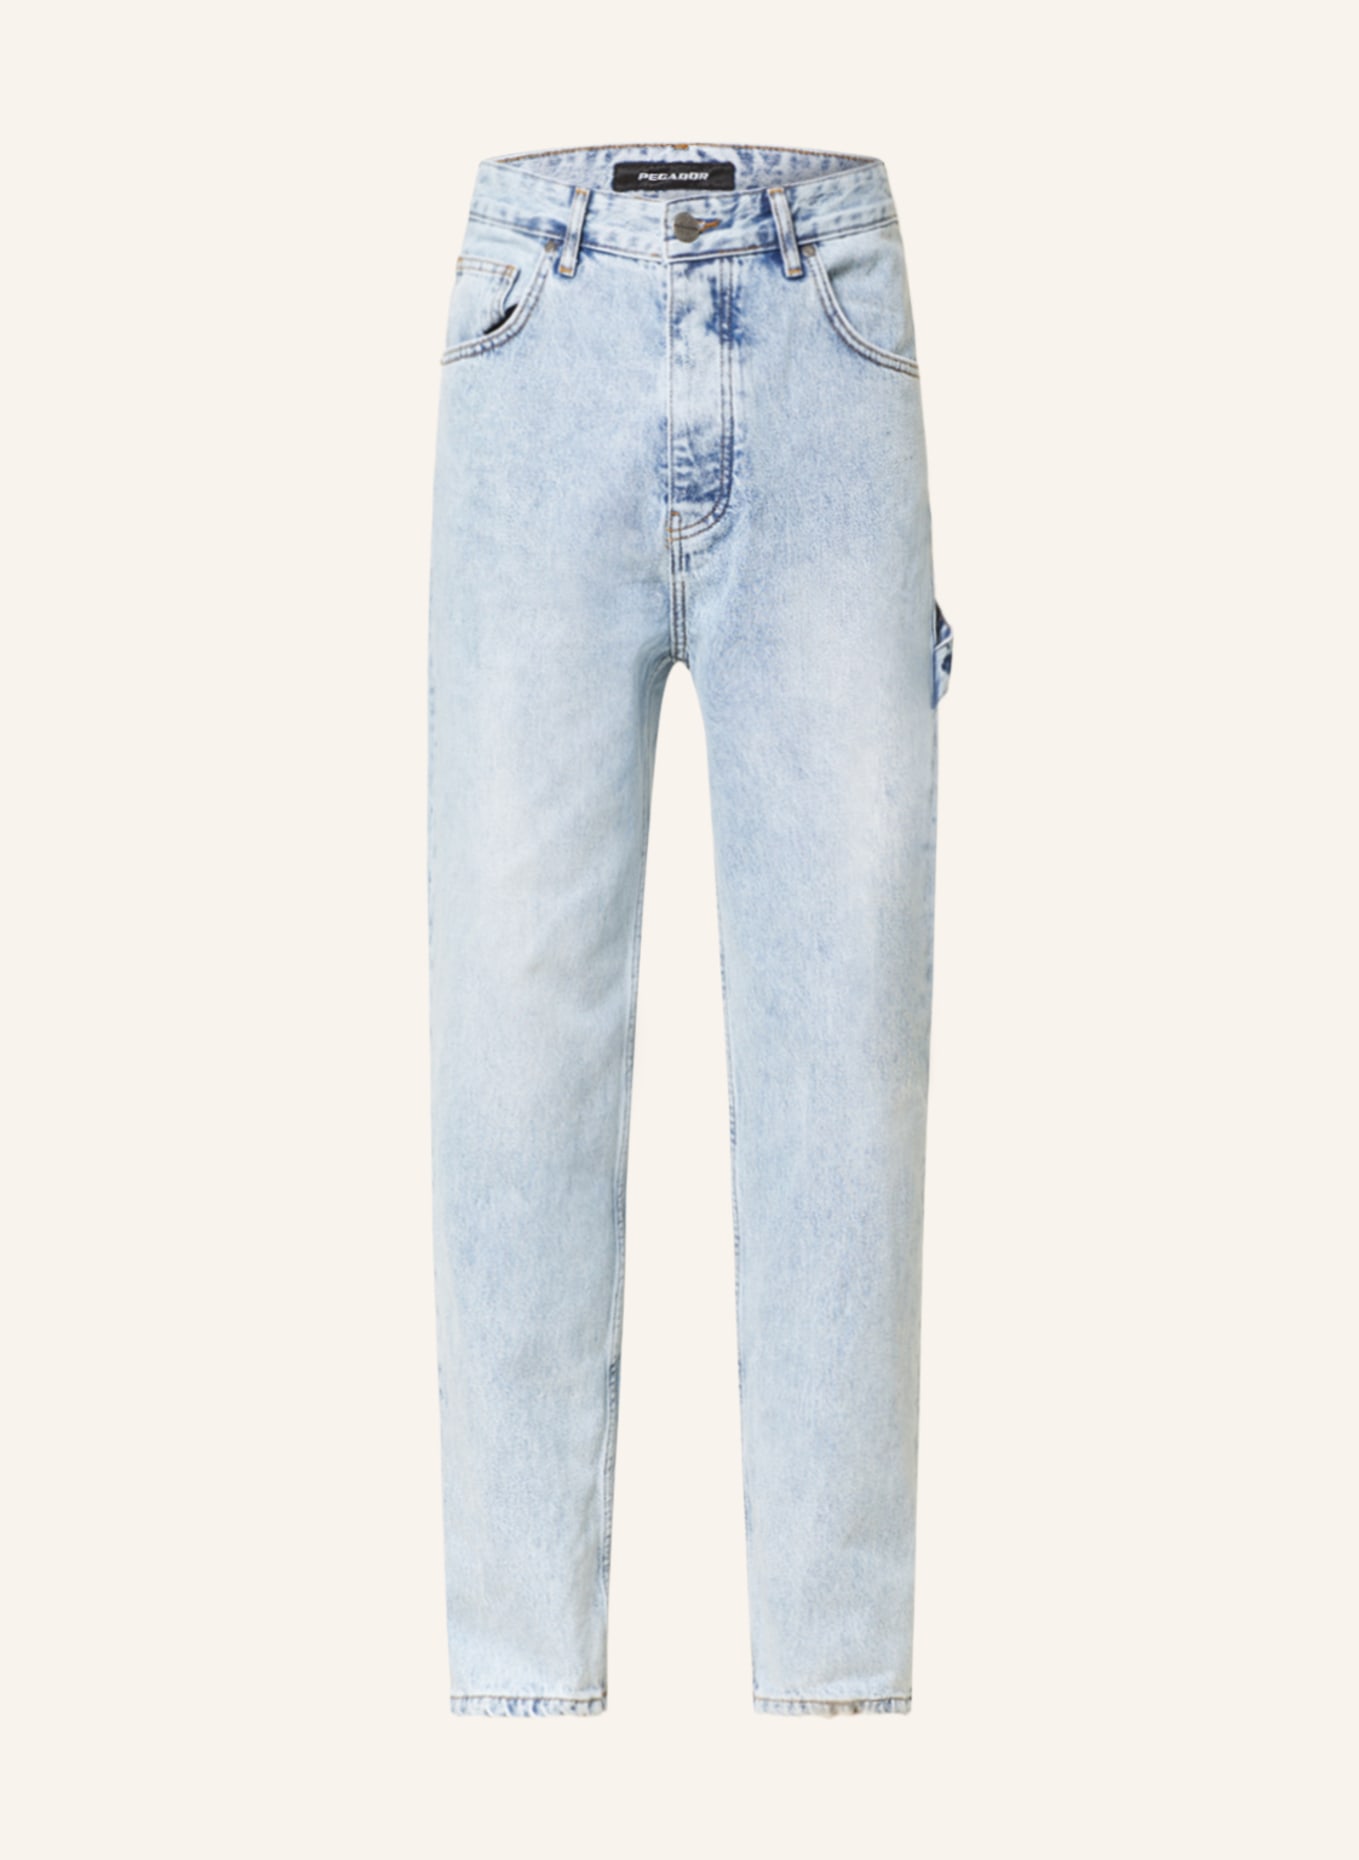 PEGADOR Jeans Slim Fit, Farbe: 076 washed light blue (Bild 1)